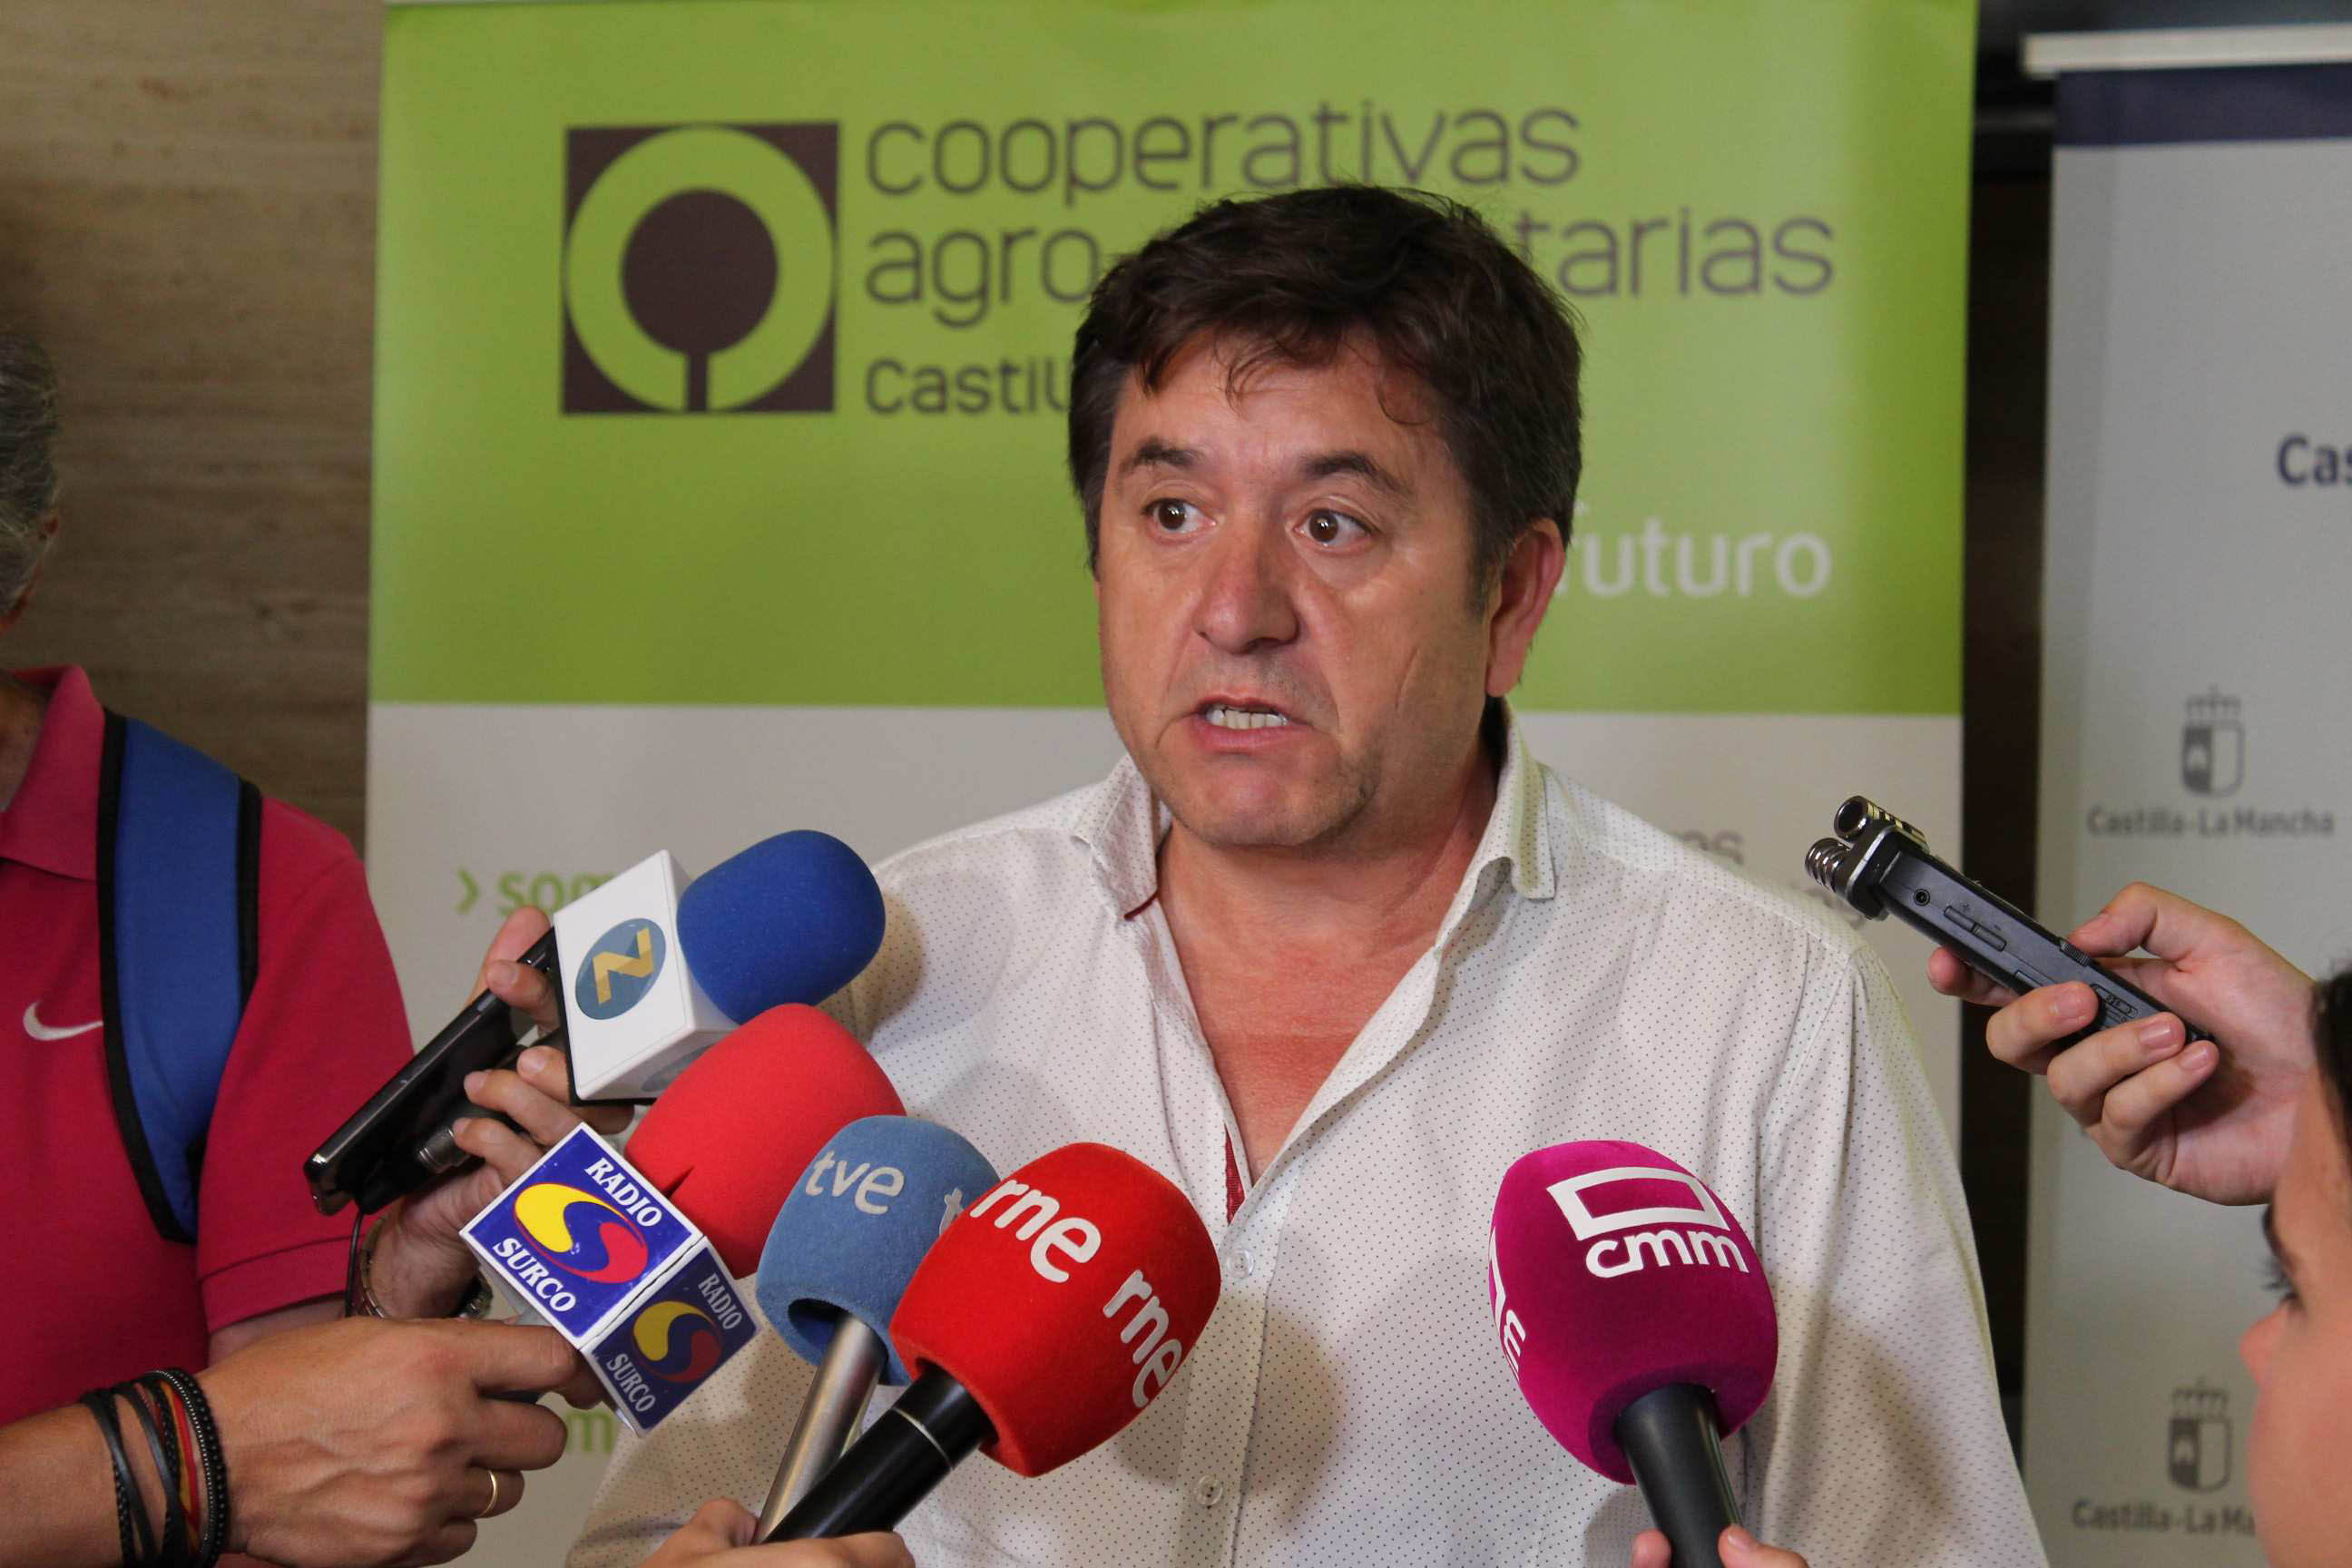 El portavoz vitivinícola de Cooperativas Agro-alimentarias Castilla-La Mancha, Juan Fuente, nuevo secretario de la Inteprofesional del Vino